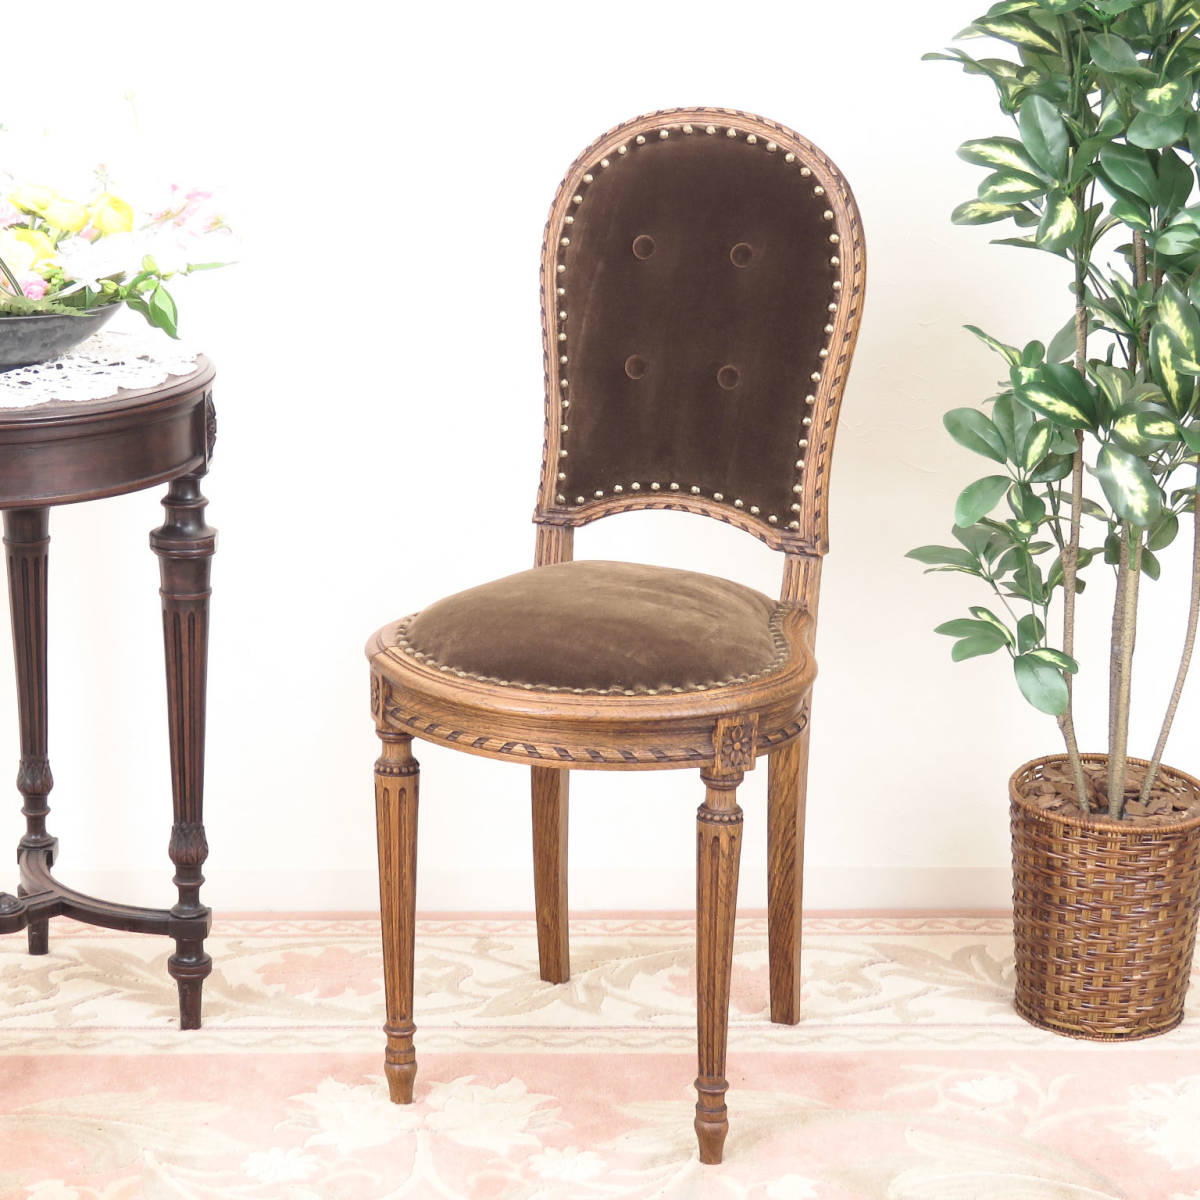 ルイ１６世様式の小ぶりなサロンチェア/ホールチェア/木製椅子/イス/店舗什器/ディスプレイ/インテリア/フランスのアンティーク家具/A-4336